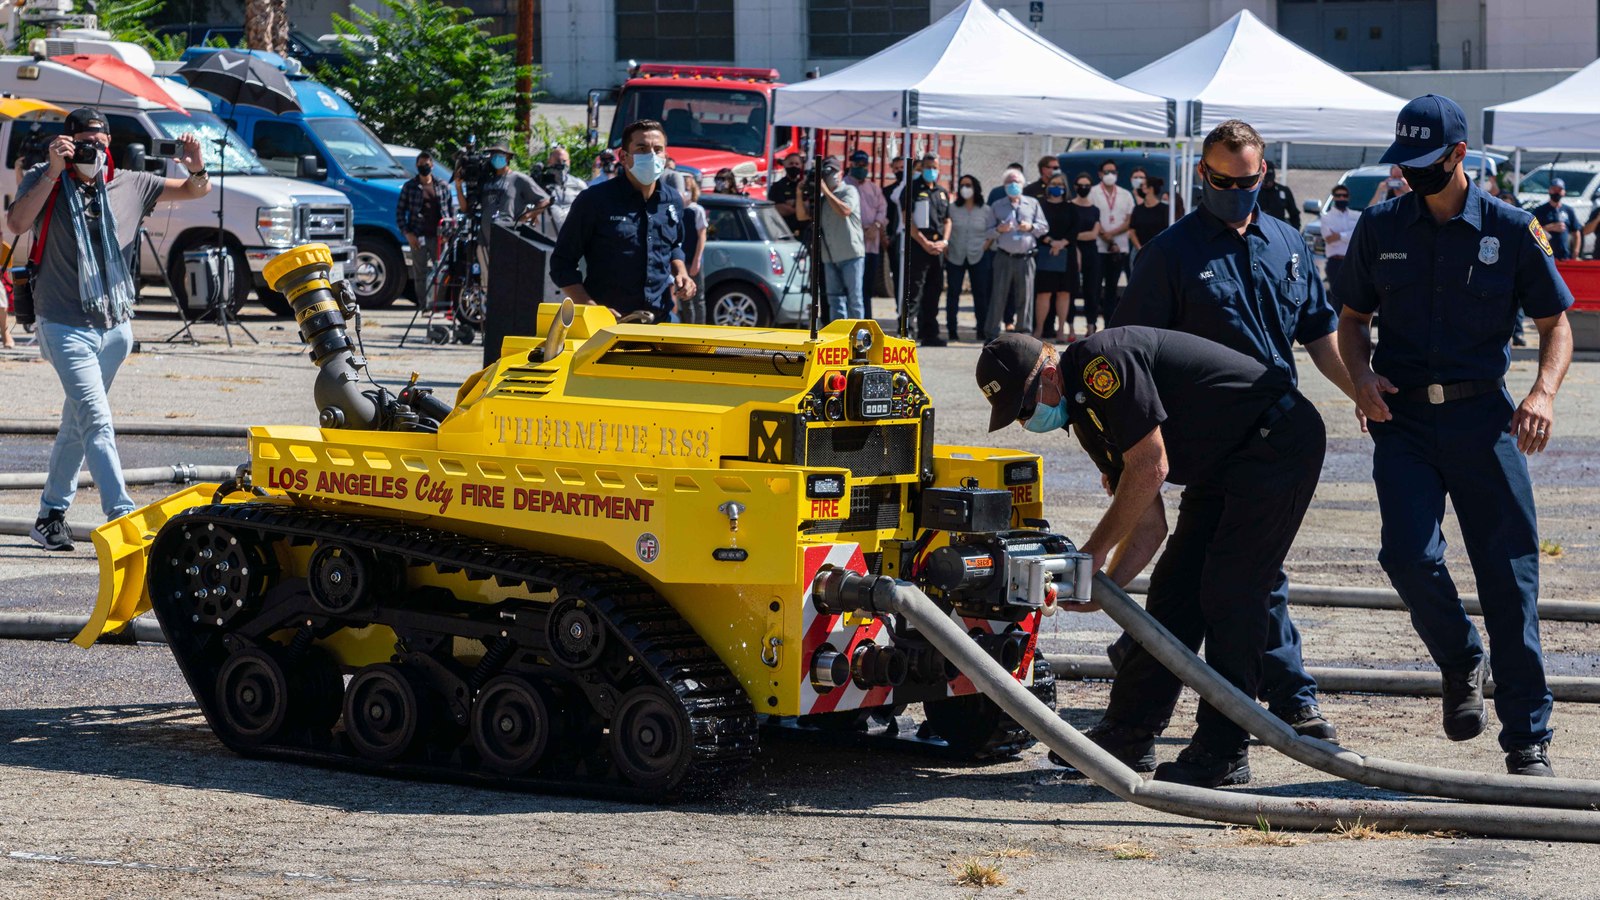 Meet the Robot Firefighter That Battled the Notre Dame Blaze